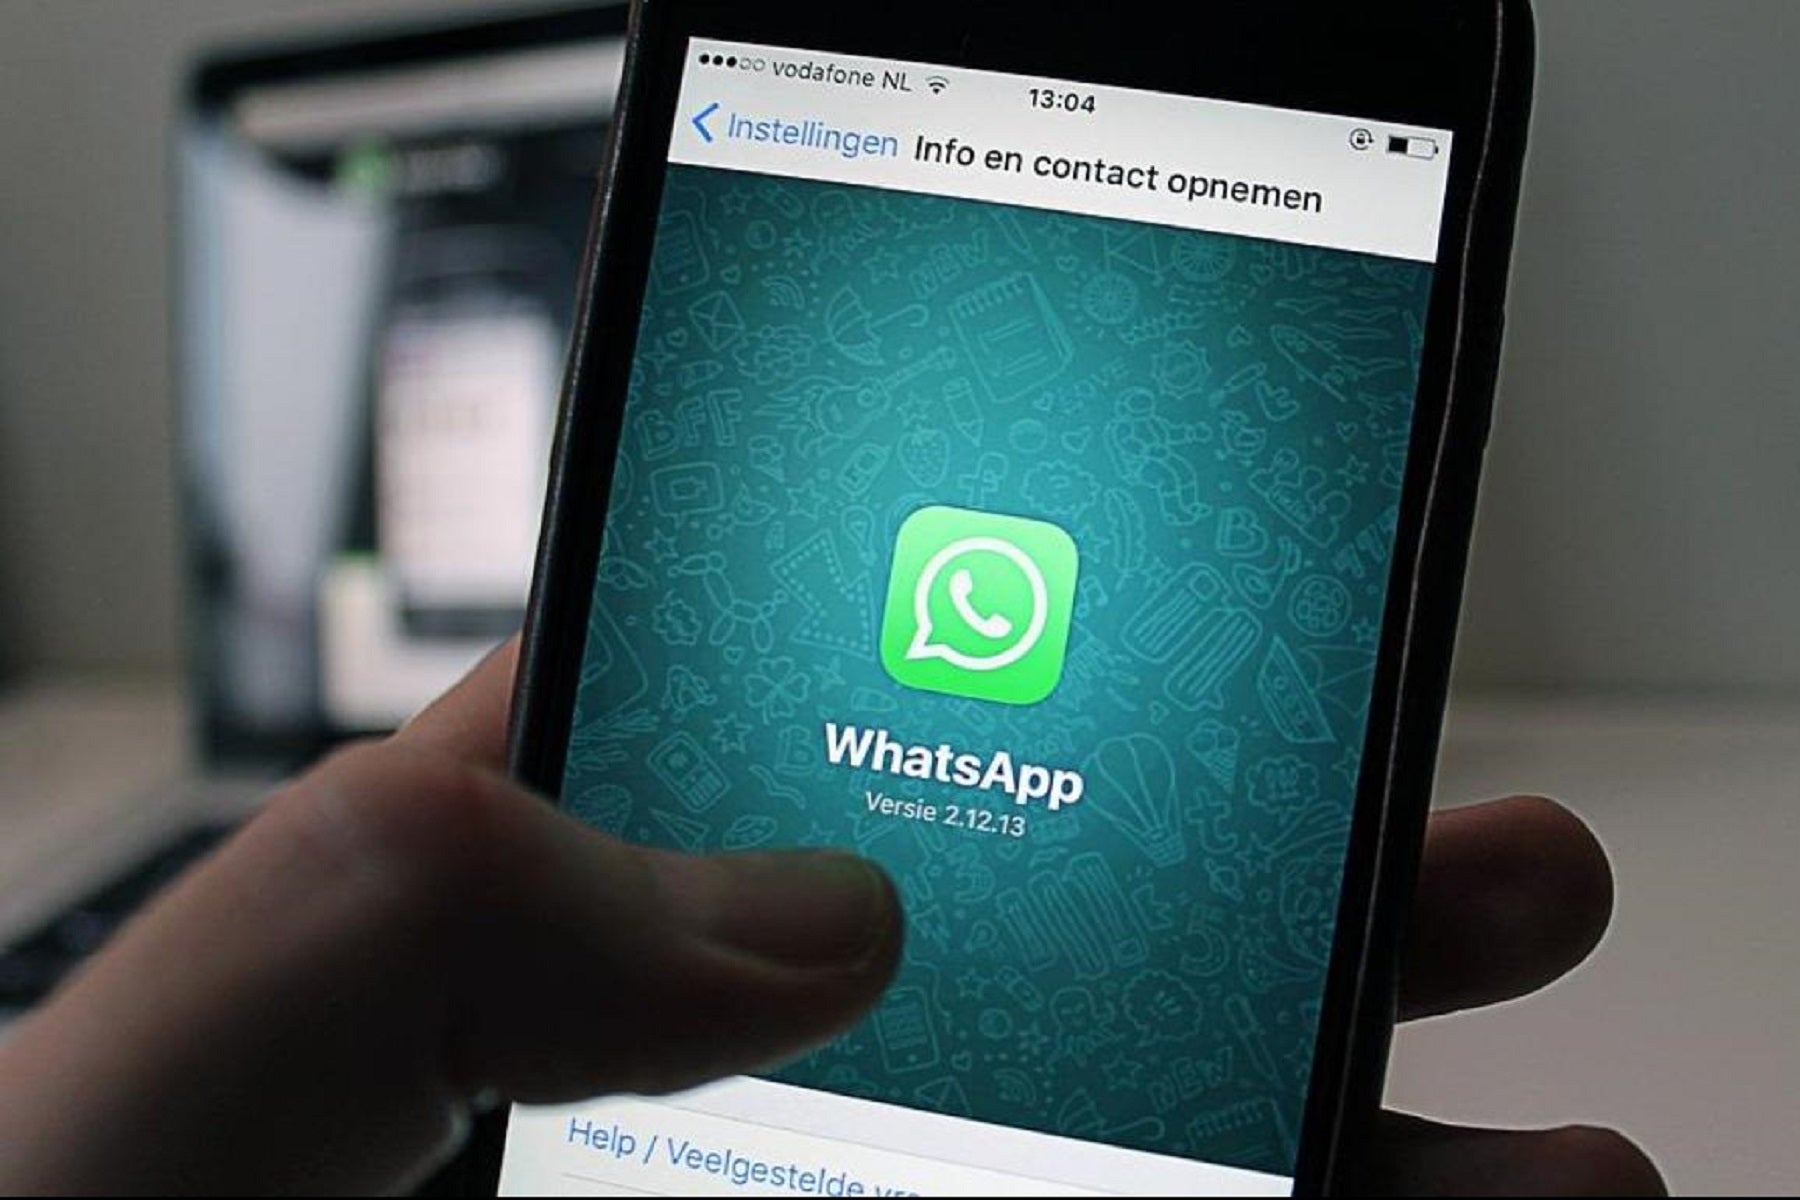 SMS sederhana dapat meninggalkan Anda tanpa WhatsApp Anda